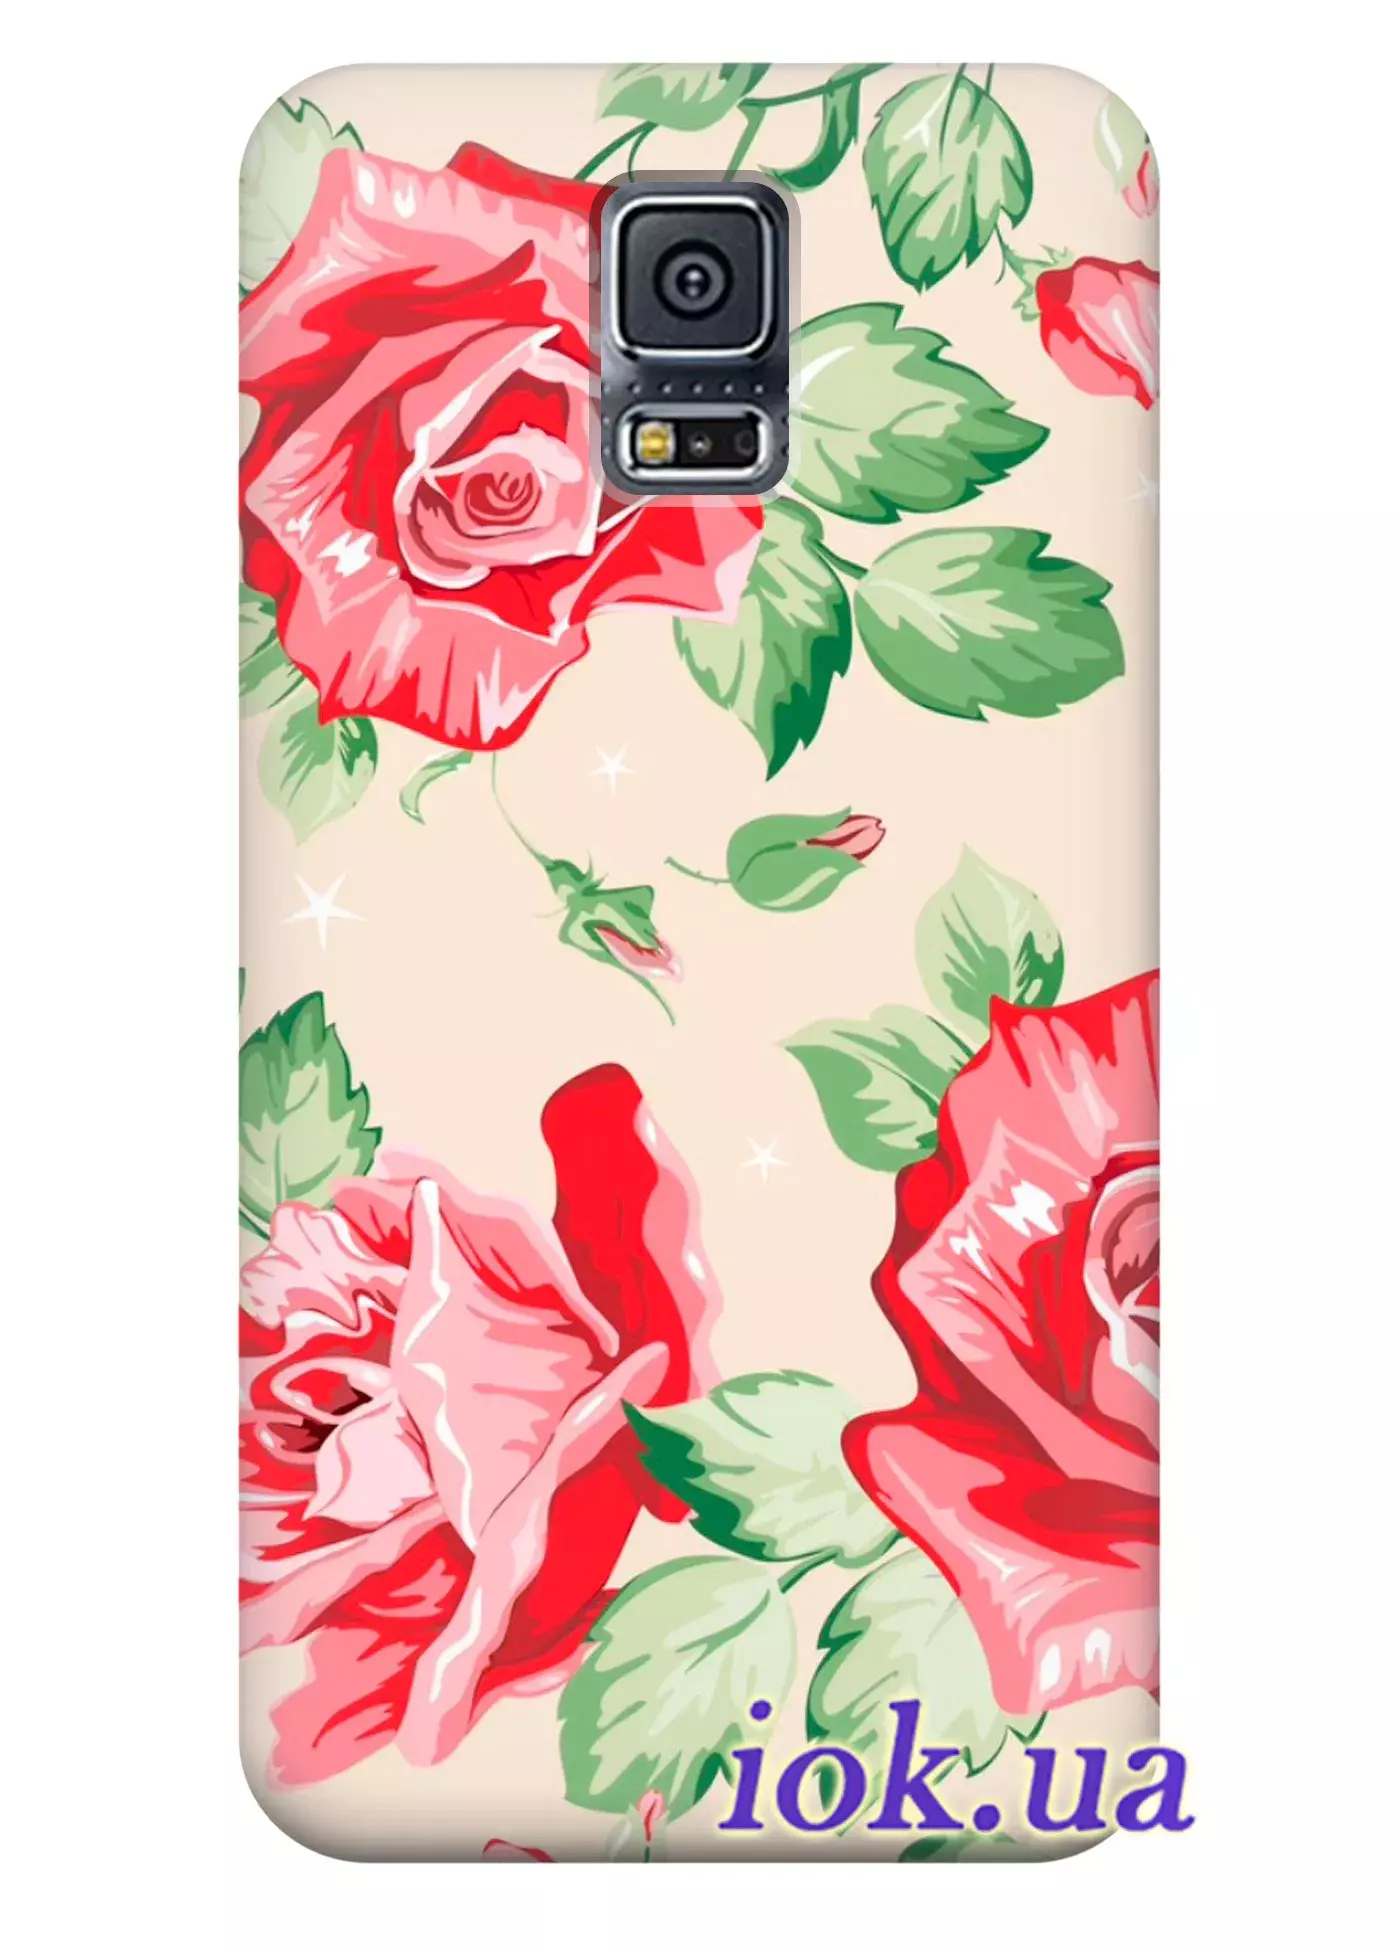 Чехол для Galaxy S5 Plus - Большие цветы